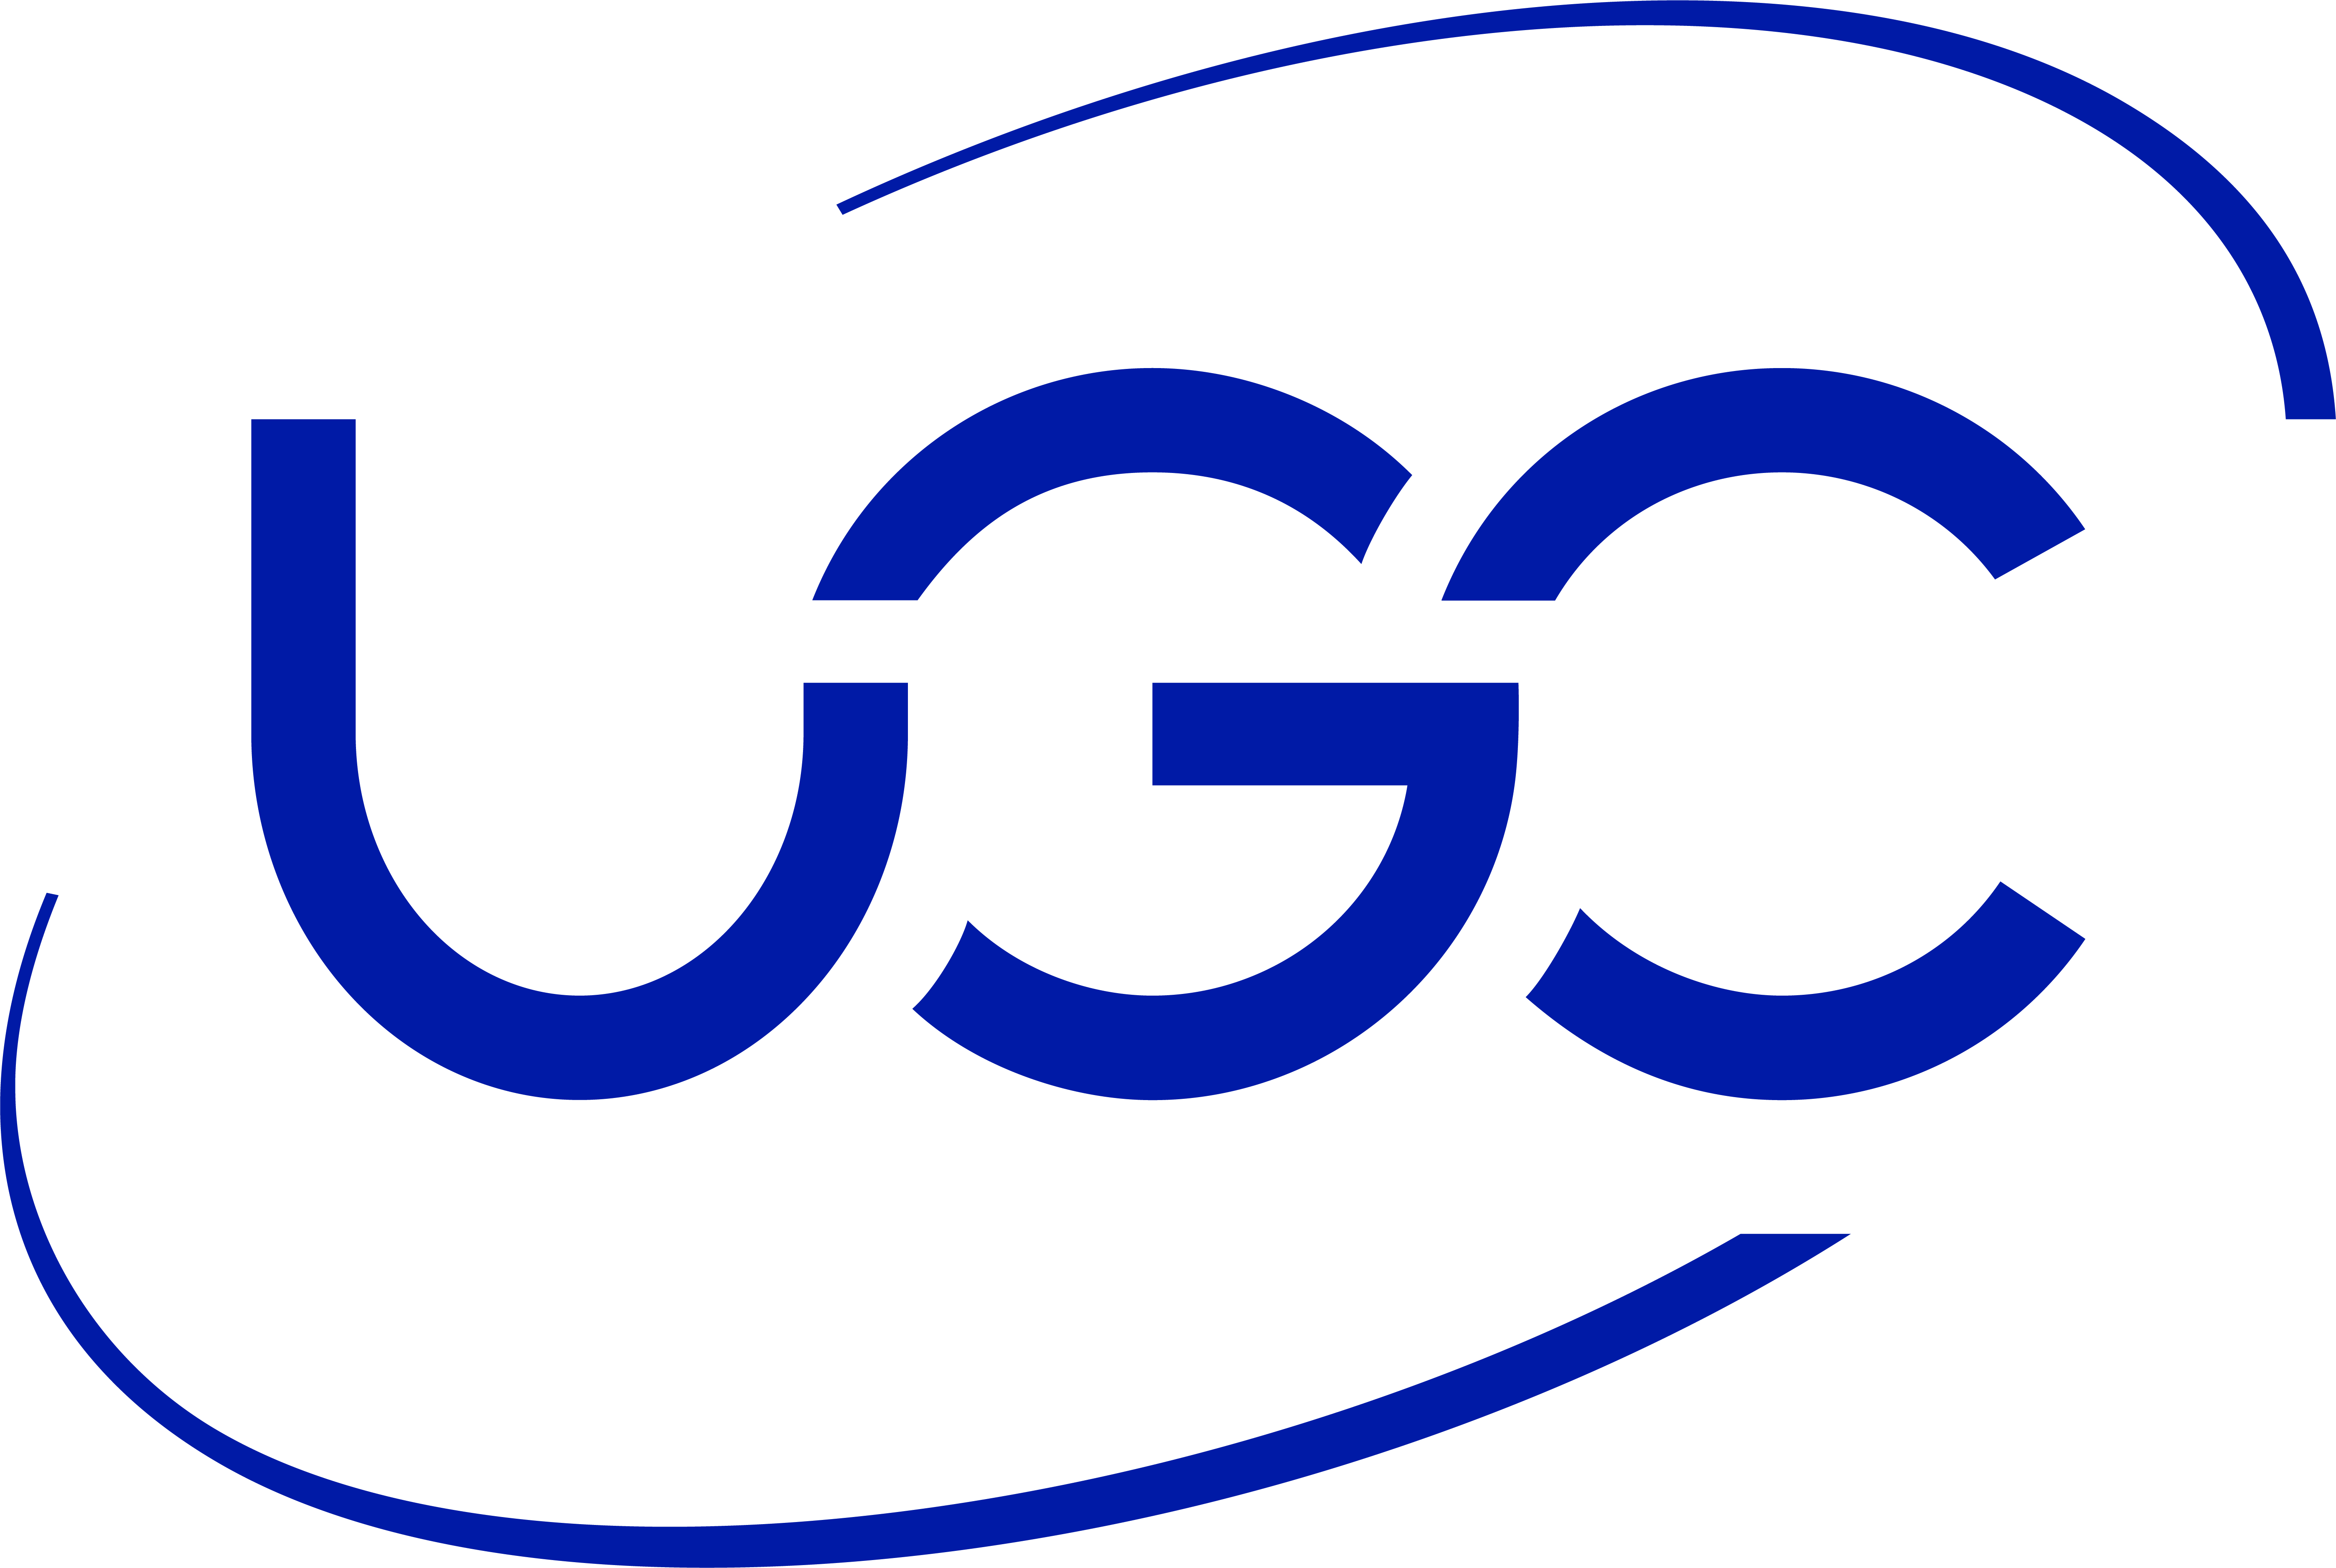 Logo UGC